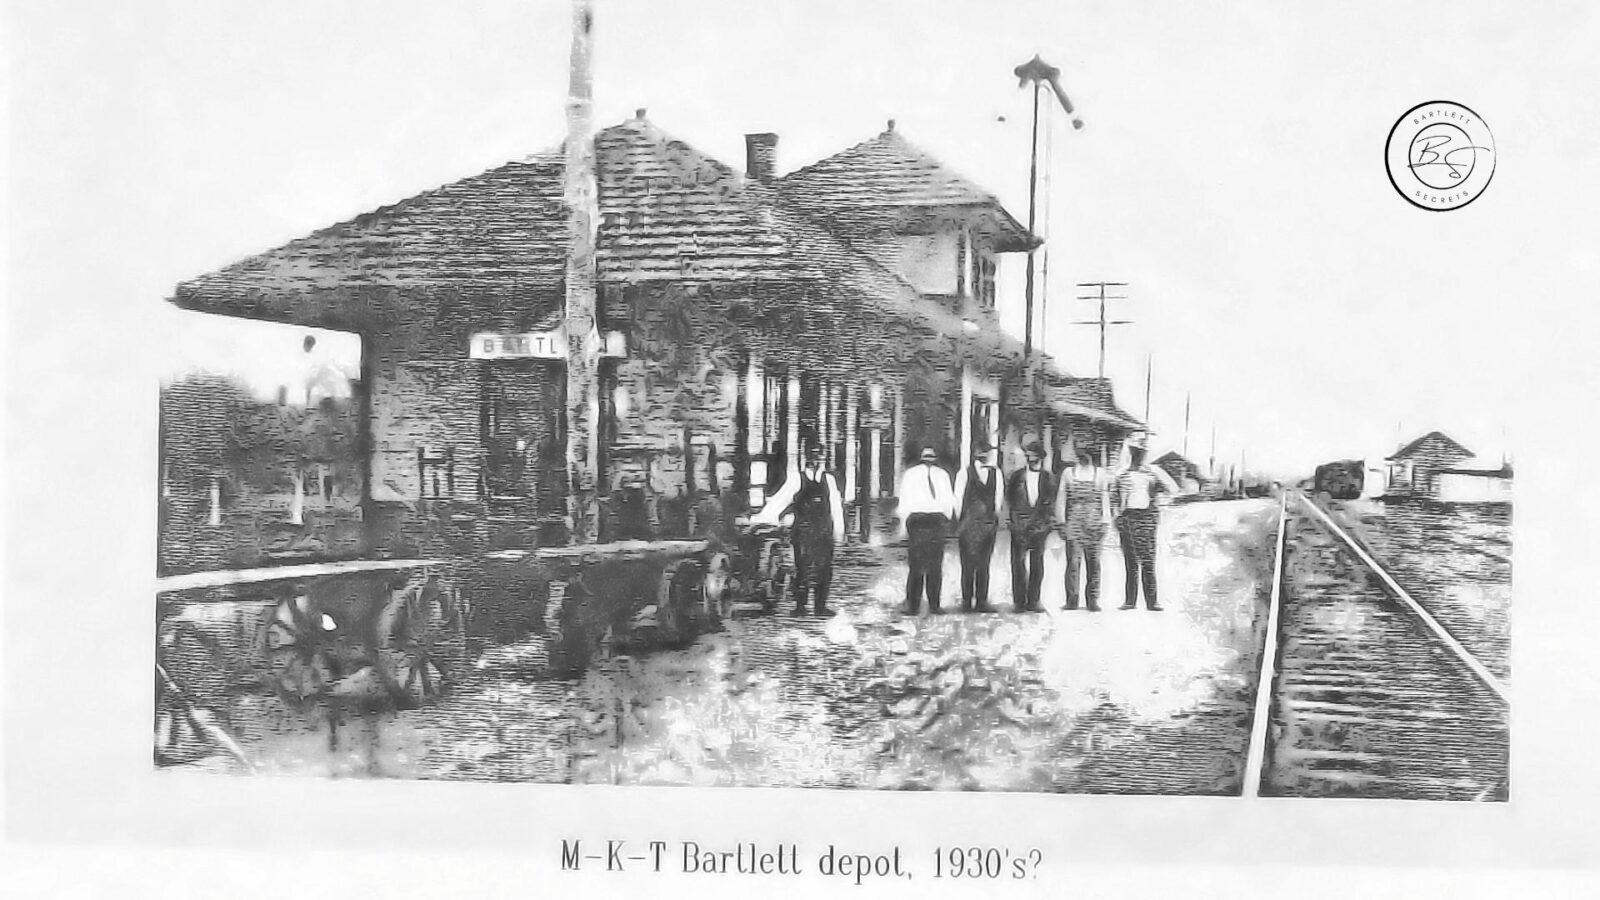 Bartlett Texas Bartlett Tx Historic Bartlett Photos Bartletts History Jennifer Tucker Bartlett Secrets Jay Richey